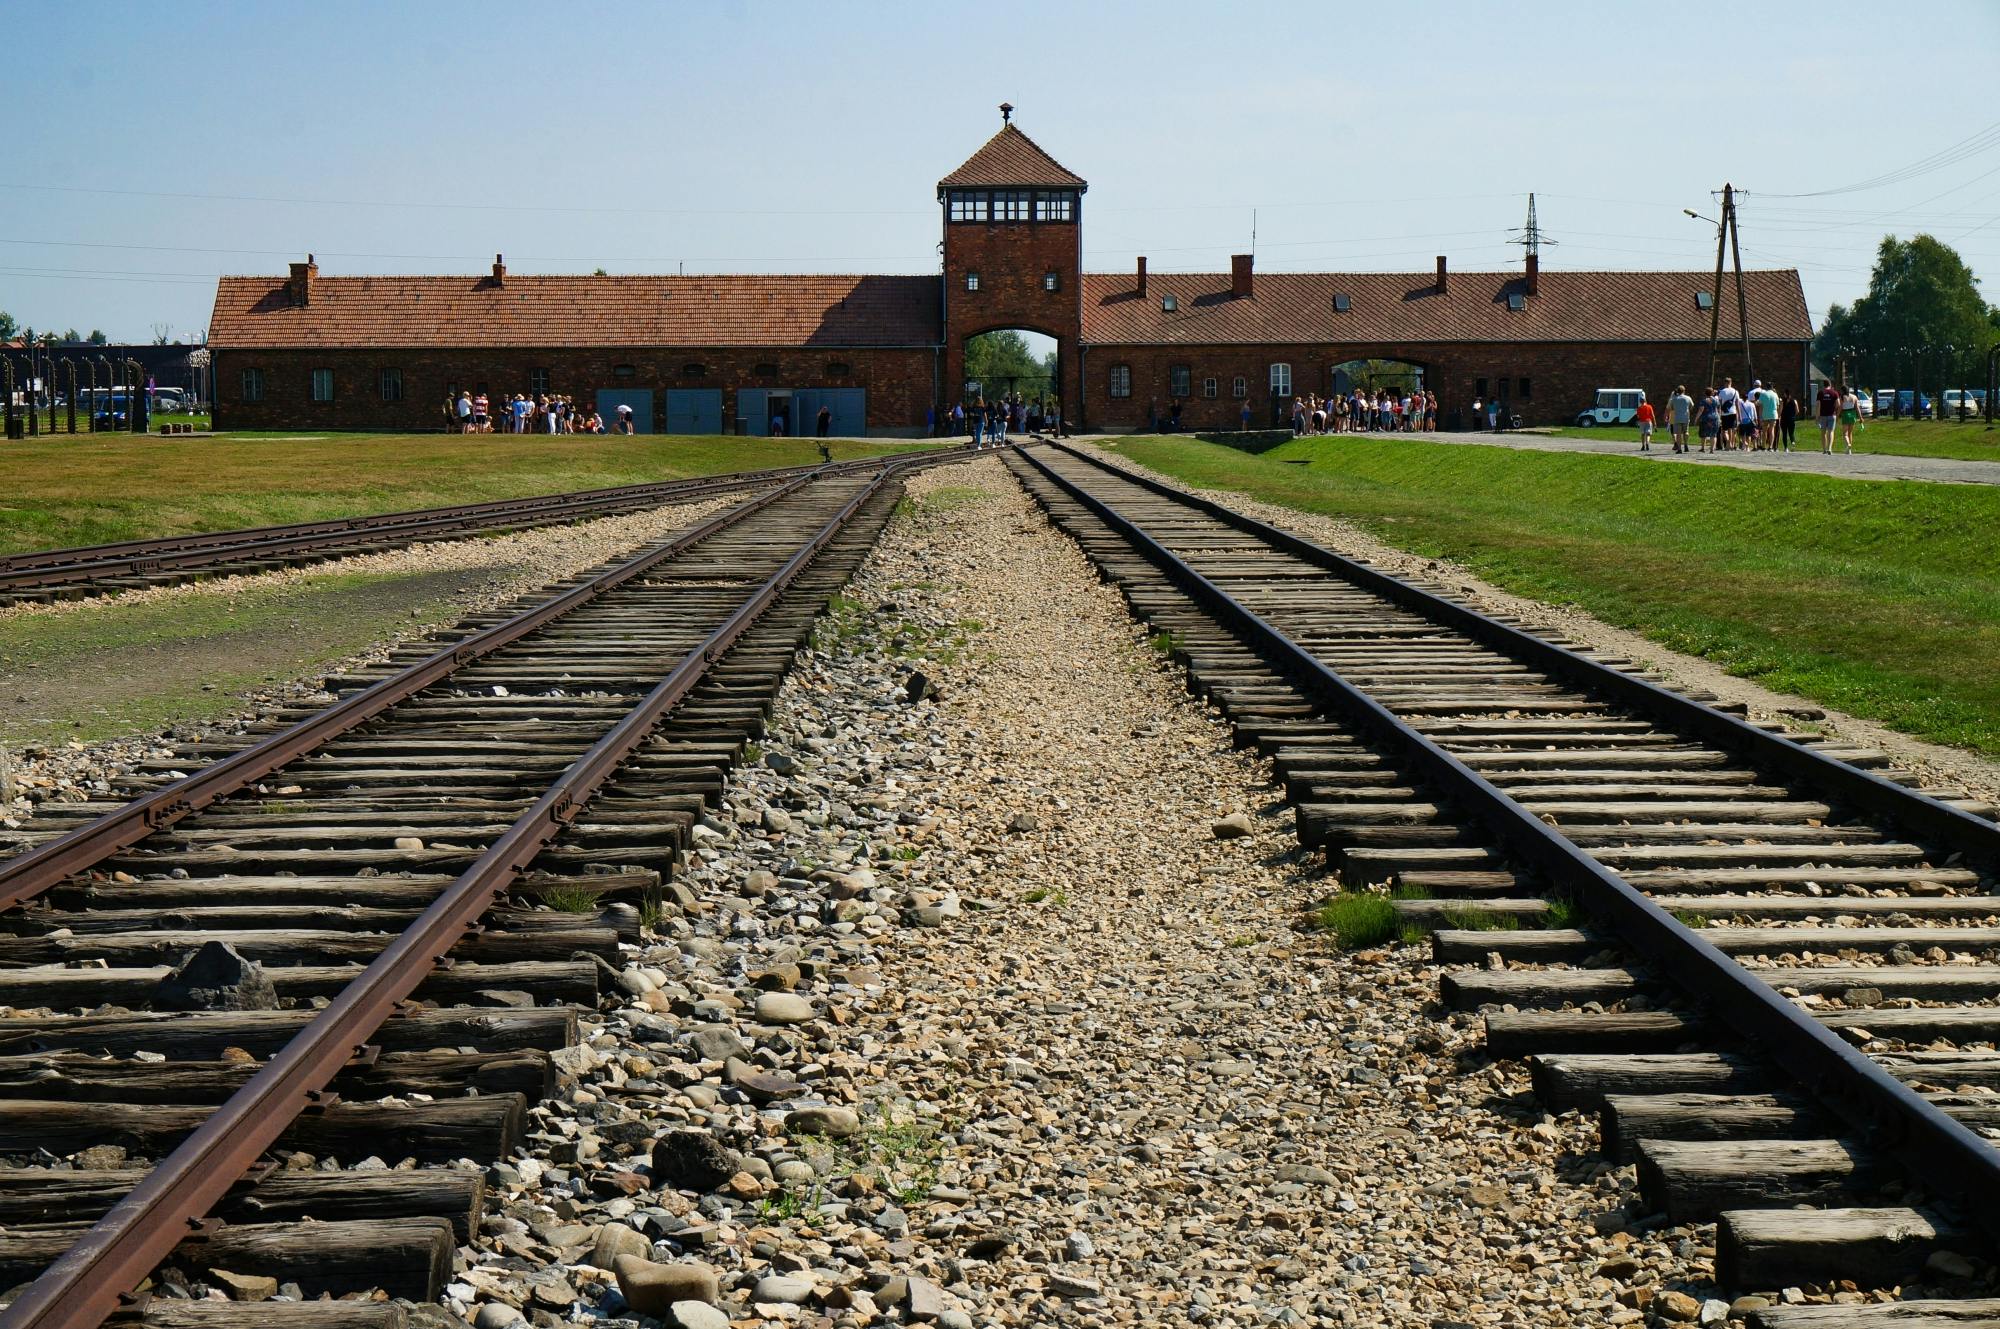 Krakow Auschwitz - Birkenau self-guided tour with pick-up